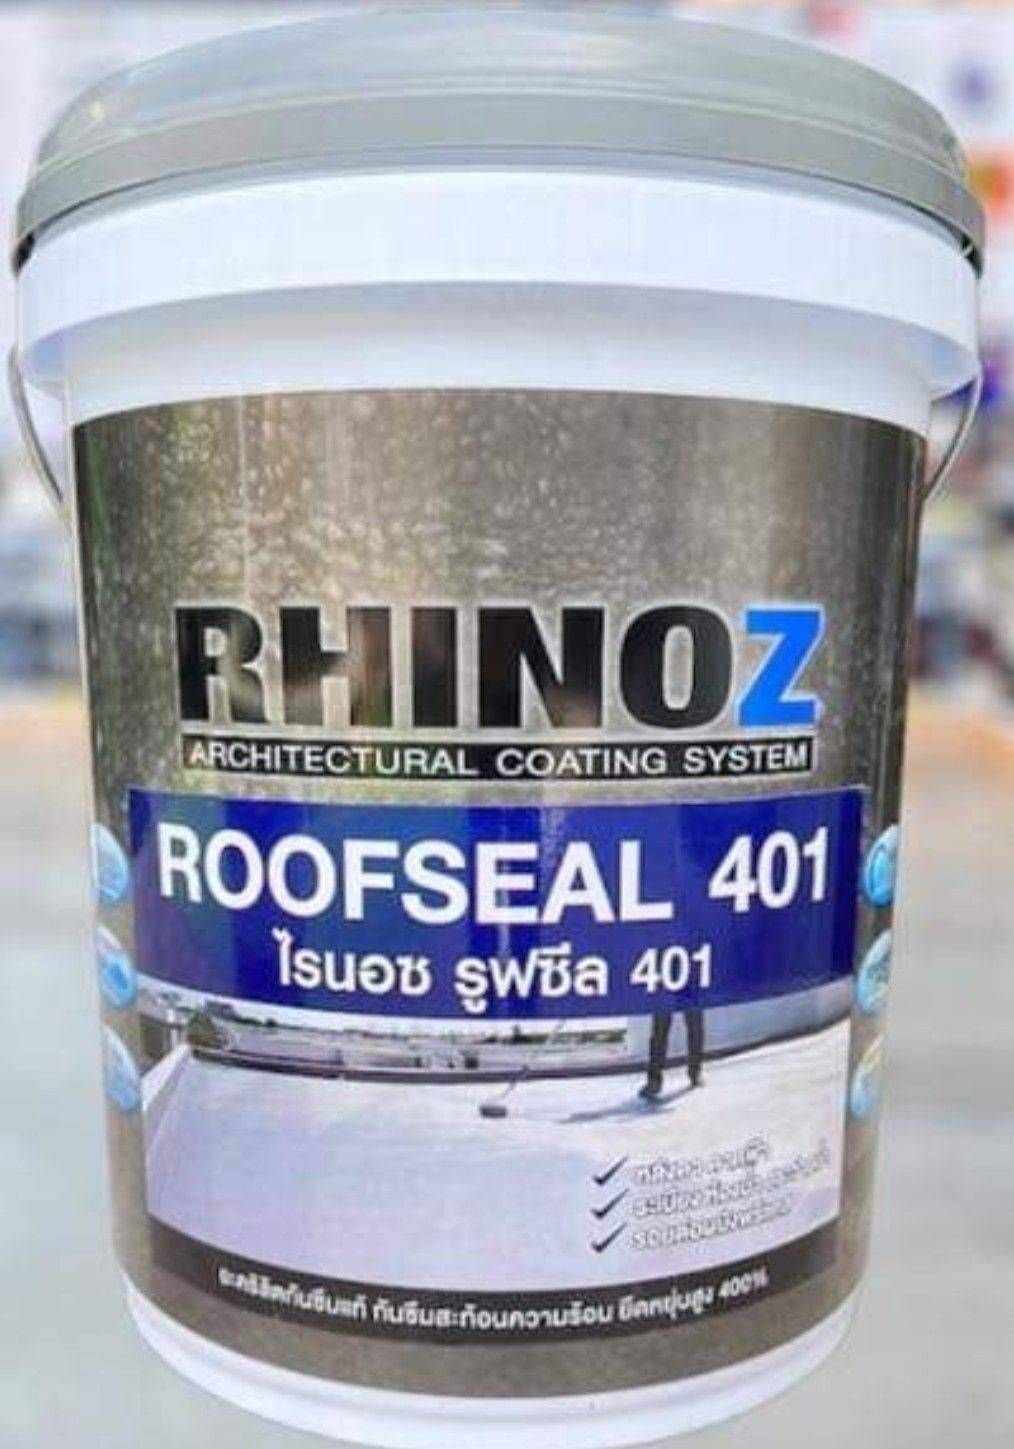 RF-256 อะคริลิคกันซึมคุณภาพสูงกันซึมสะท้อนความร้อน RHINOZ RoofSeal 401 ยืดหยุ่น 400% ขนาด 4 kg.